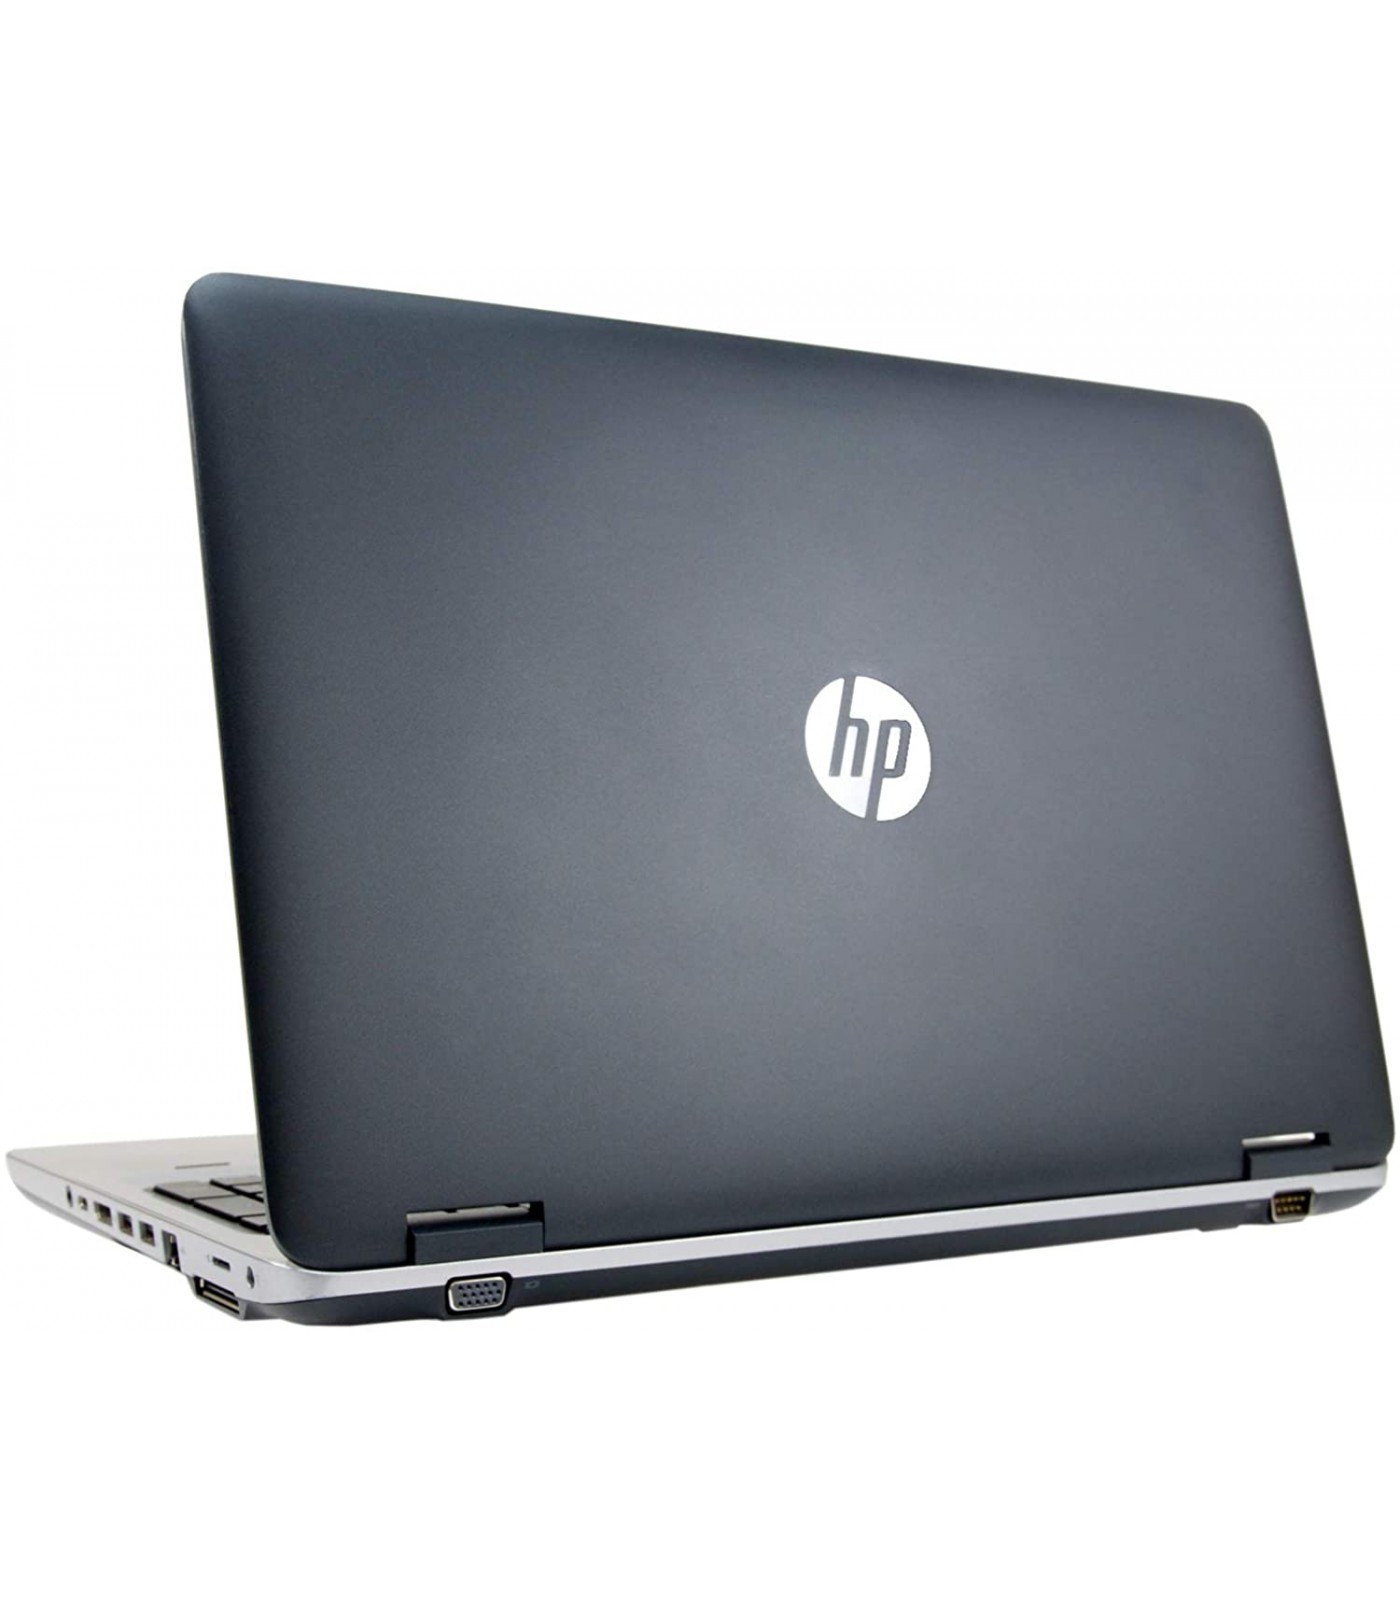 Poleasingowy laptop HP ProBook 650 G2 i5-6300U w klasie A+